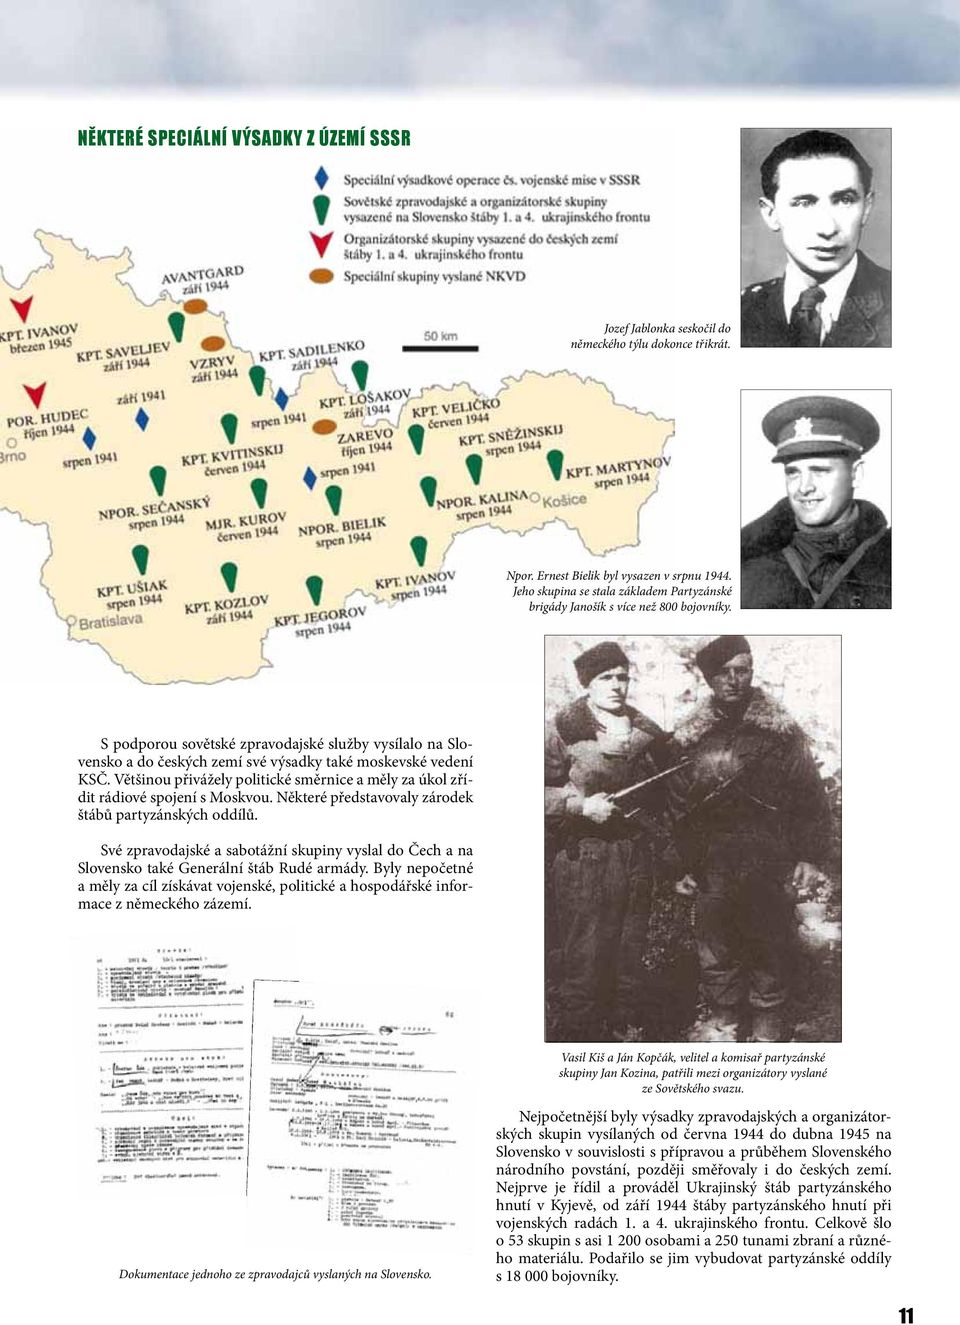 S podporou sovětské zpravodajské služby vysílalo na Slovensko a do českých zemí své výsadky také moskevské vedení KSČ.